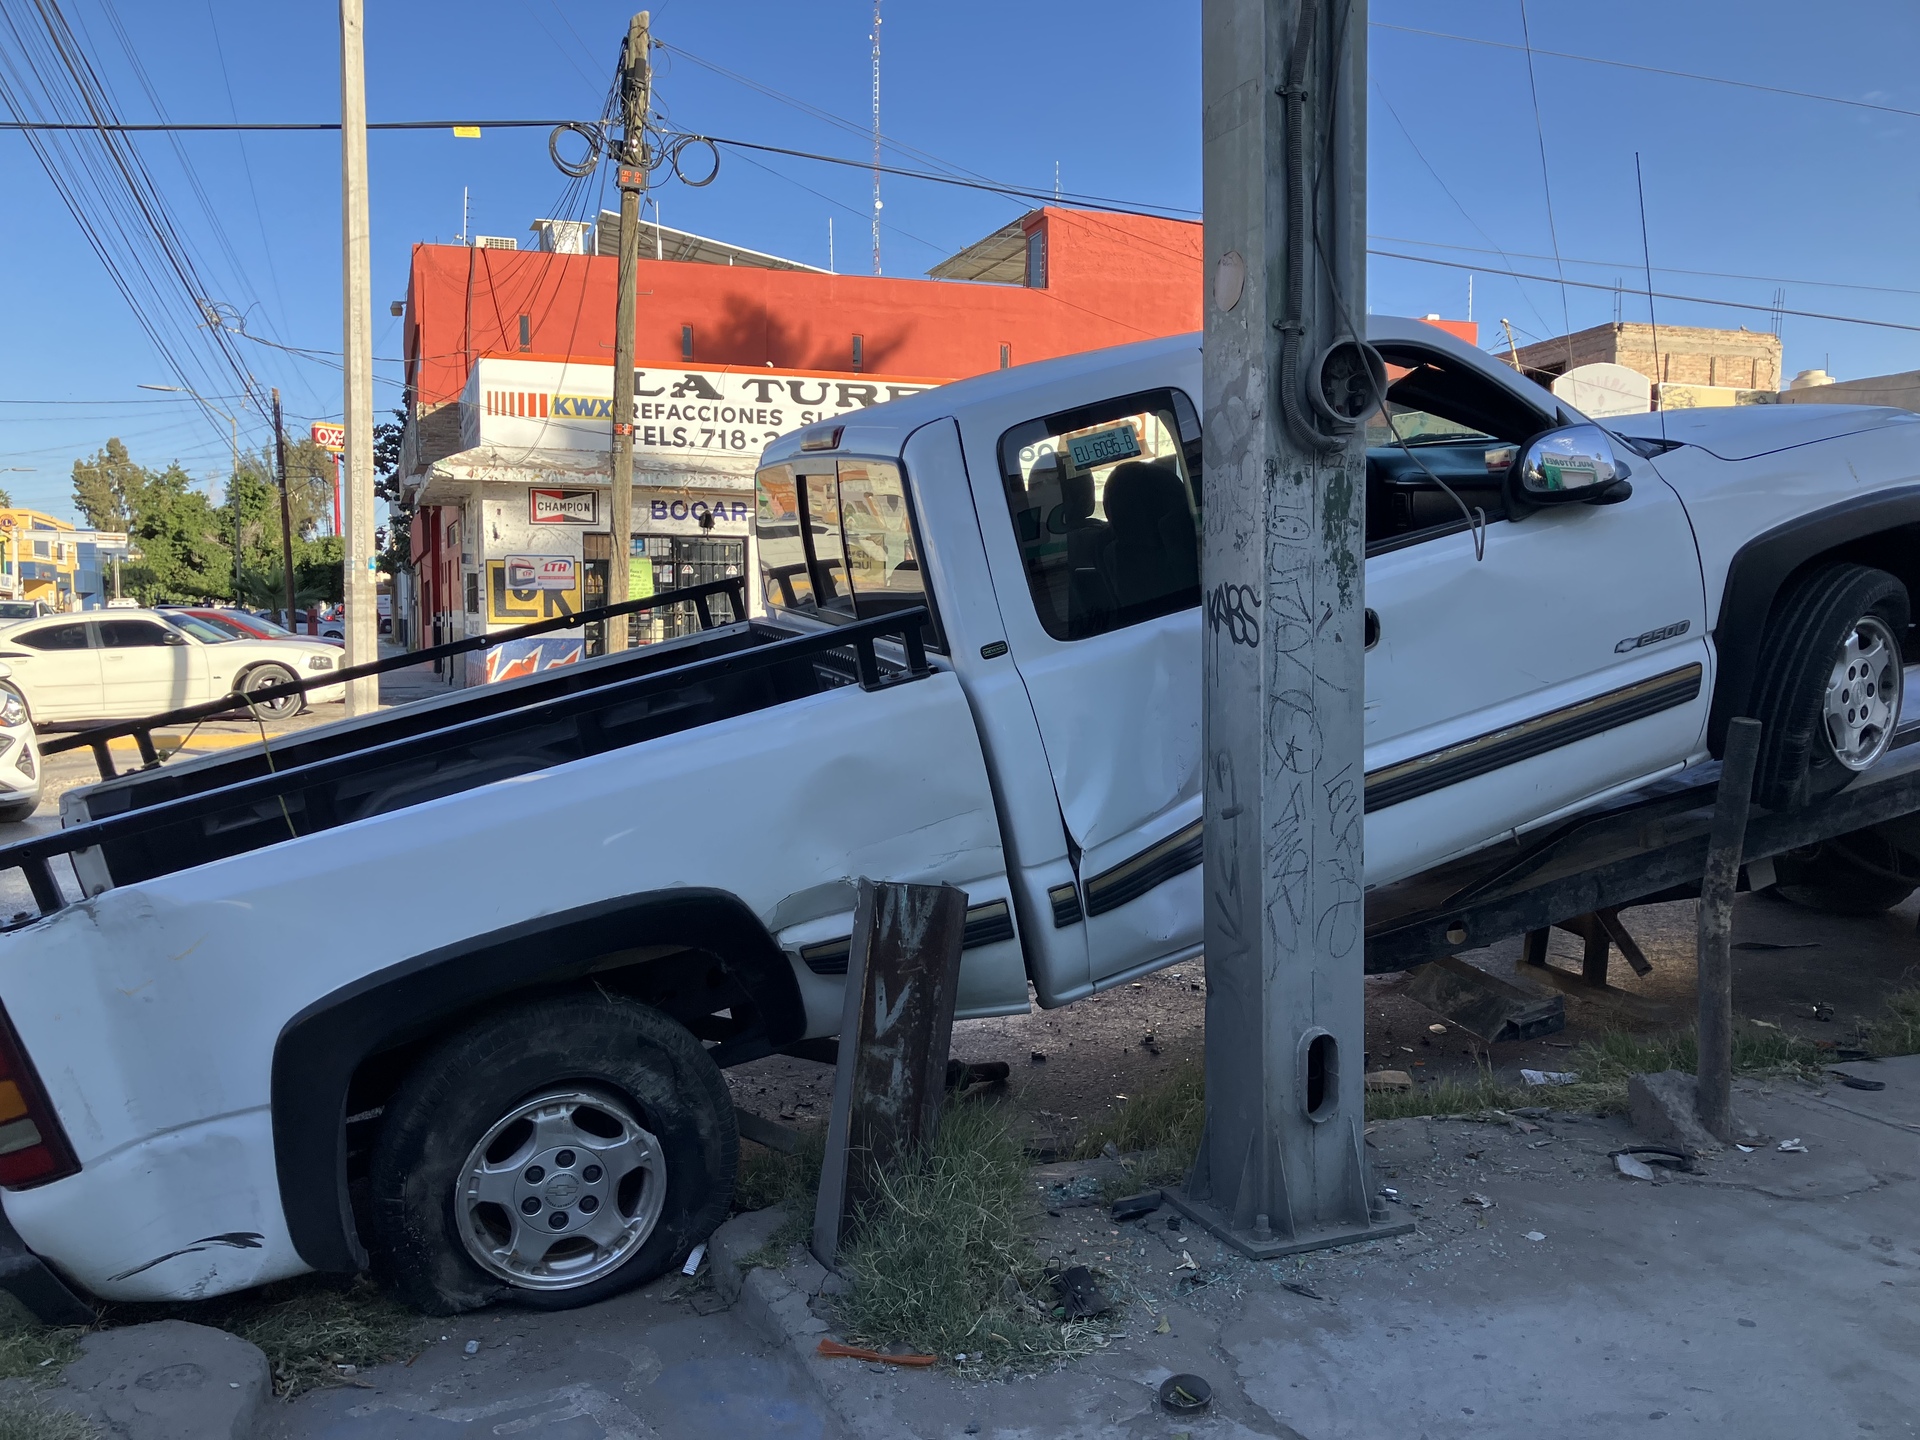 Ignora el semaforo en rojo y provoca choque en Centro de Torreón